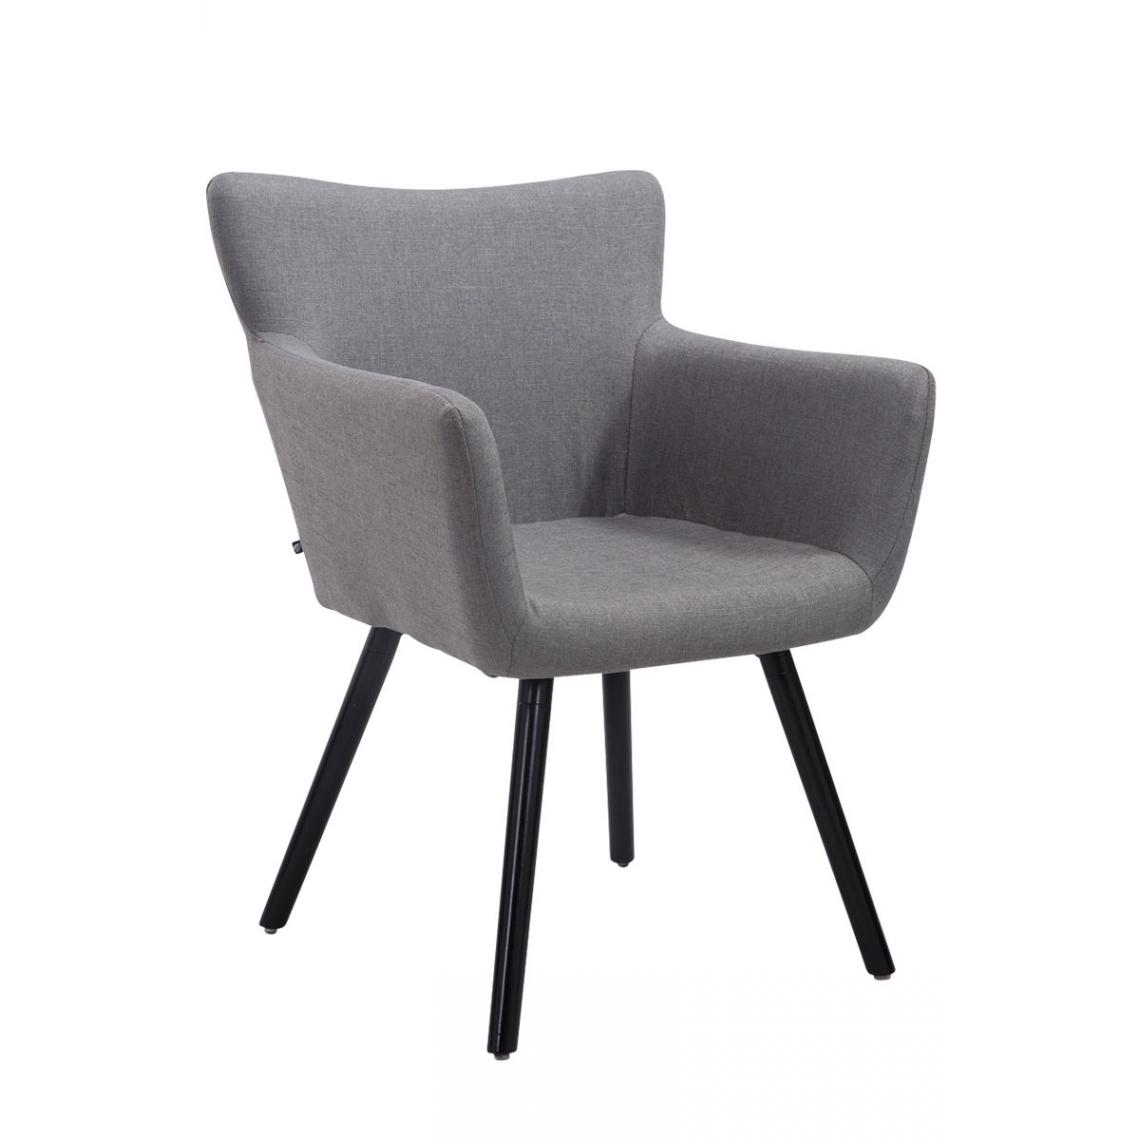 Icaverne - Superbe Chaise visiteur tissu Mascate noir couleur gris - Chaises